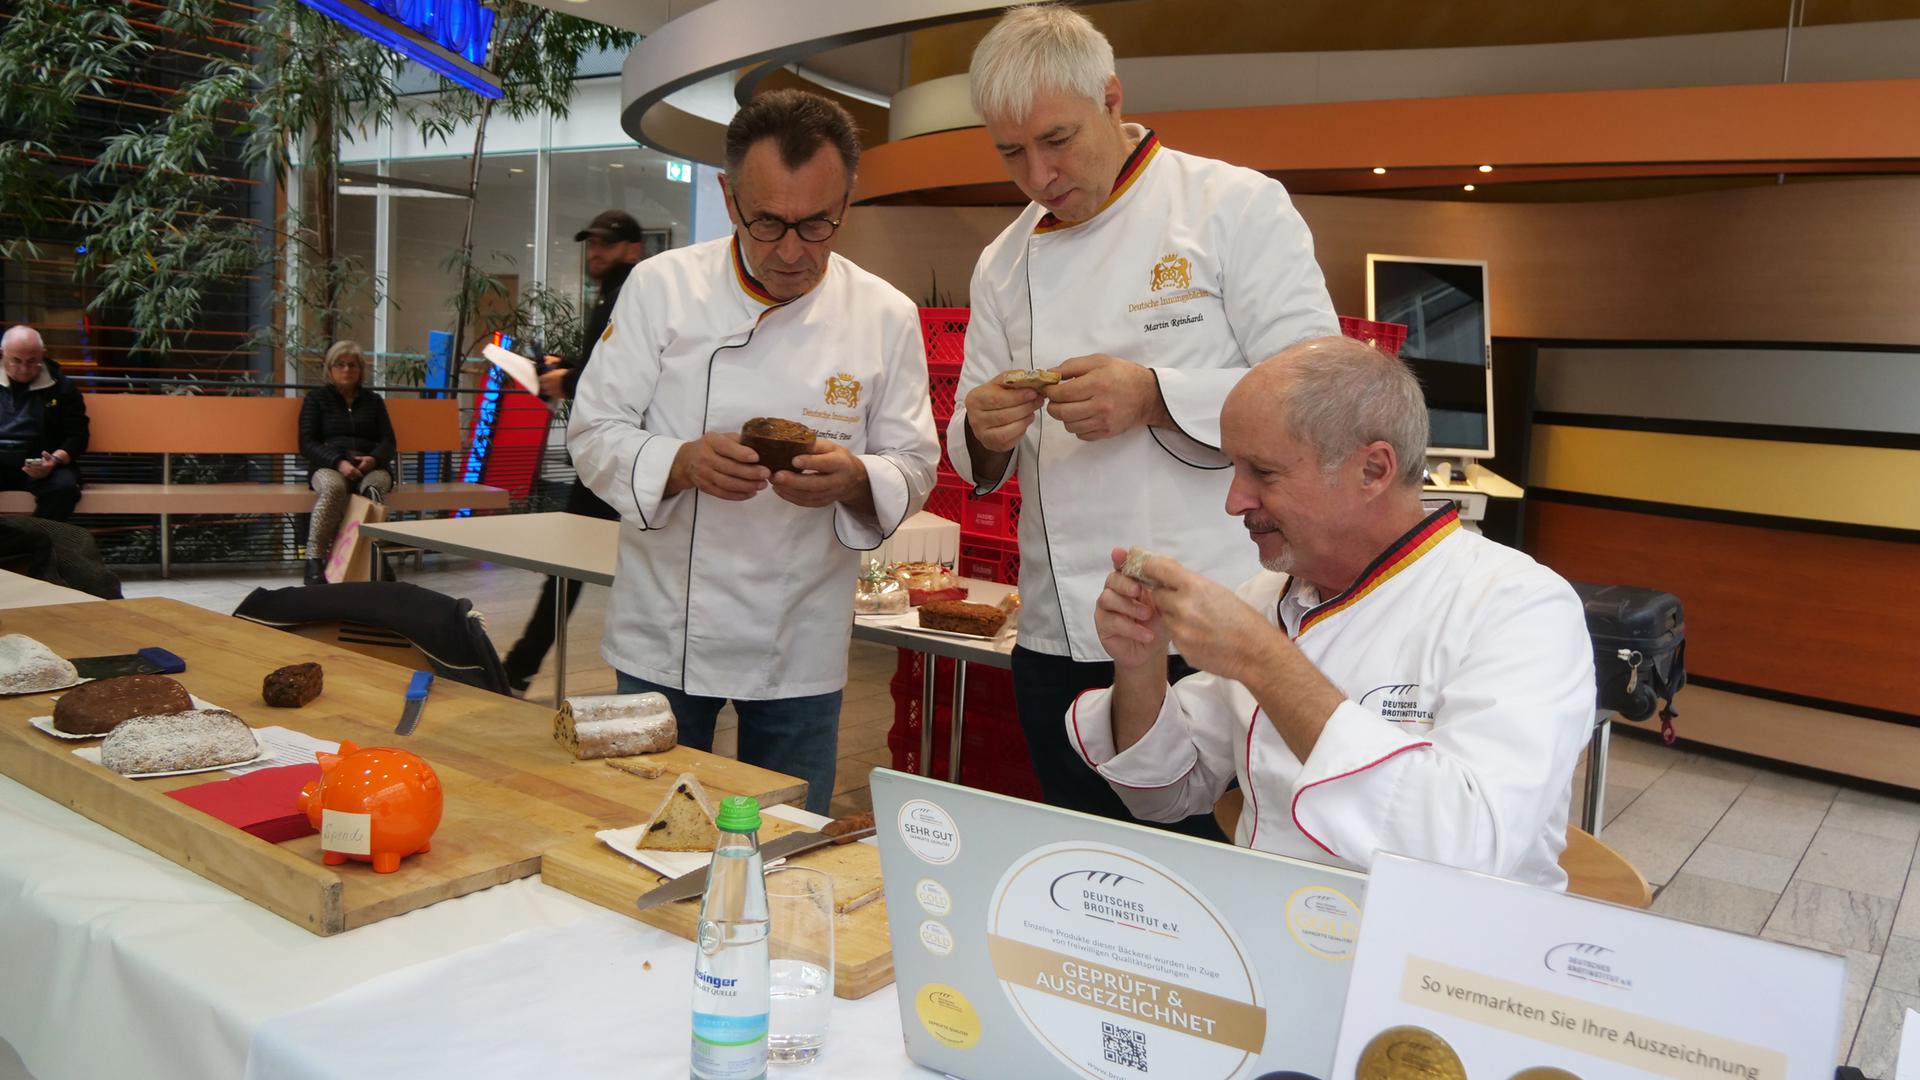 Wenn es um die Qualität der Stollen aus den hiesigen Bäckereien geht, dann schauen Manfred Förster, Martin Reinhardt und Manfred Stiefel (von links) ganz genau hin. 